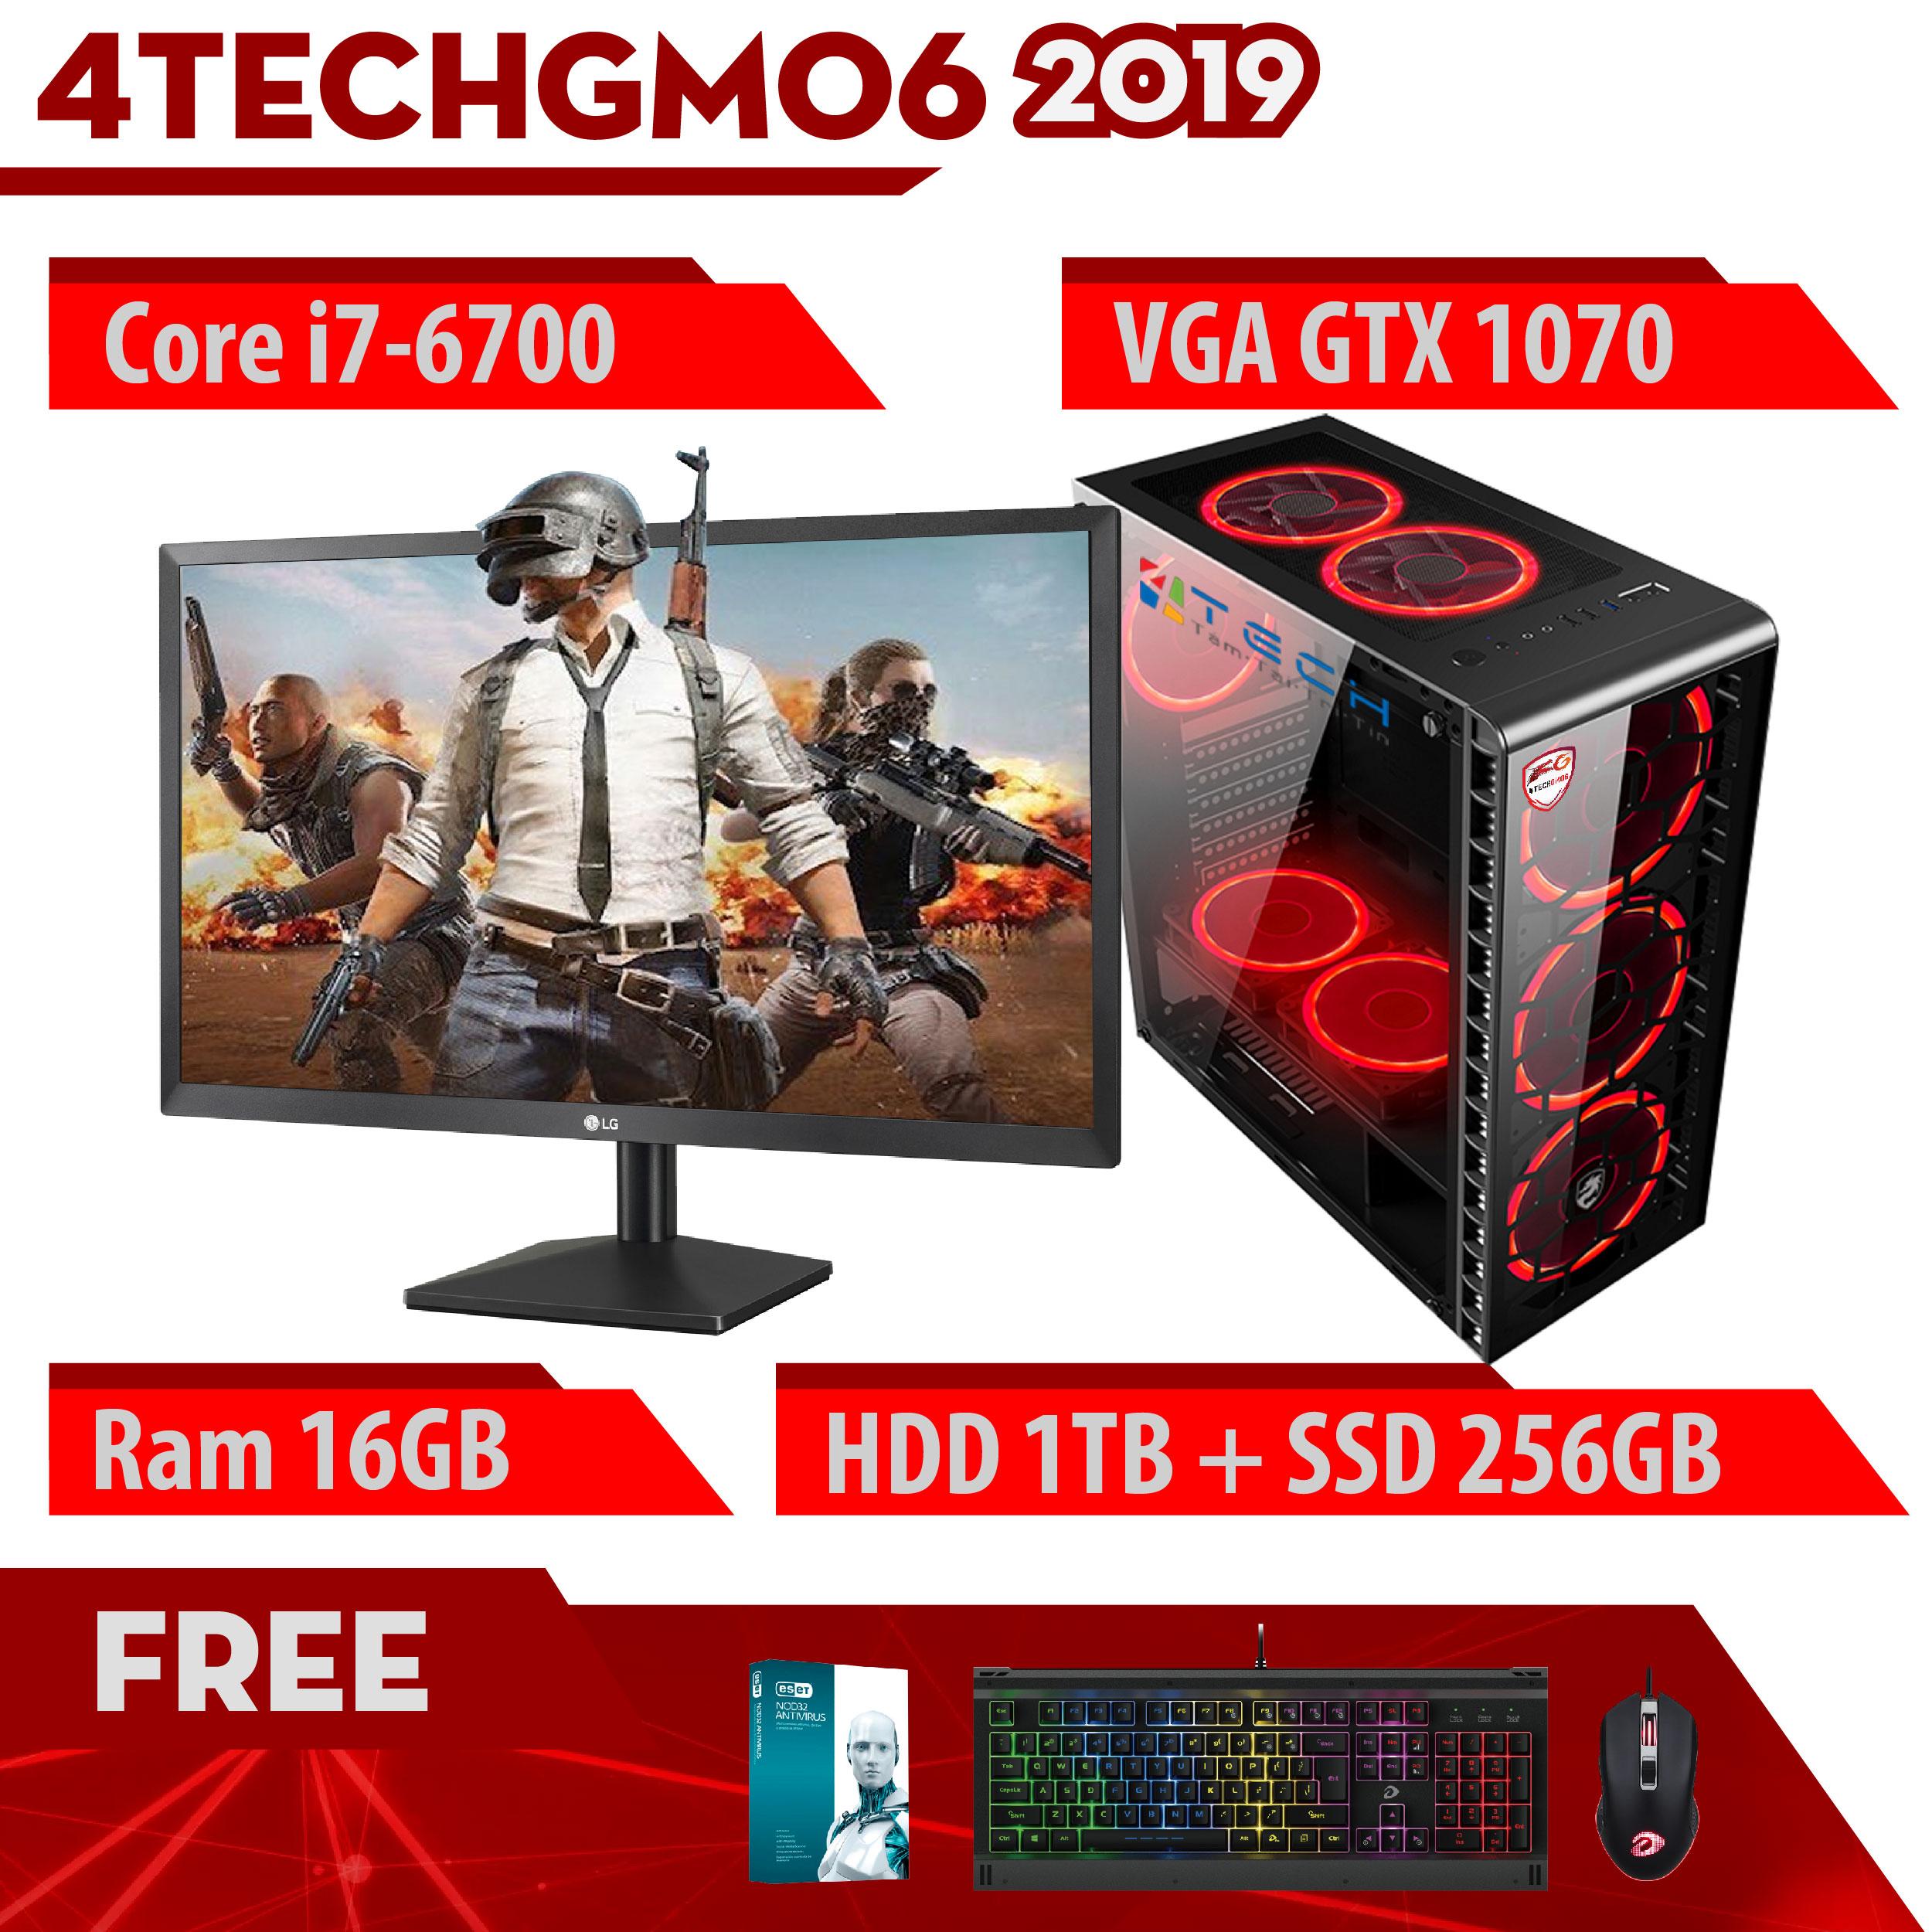 Máy Tính Chơi Game 4TechGM06 - 2019 Core i7-6700, Ram 16GB, SSD 256GB, HDD 1TB , VGA GTX 1070, Màn hình 24 inch - Tặng Bộ Phím Chuột Gaming DareU.